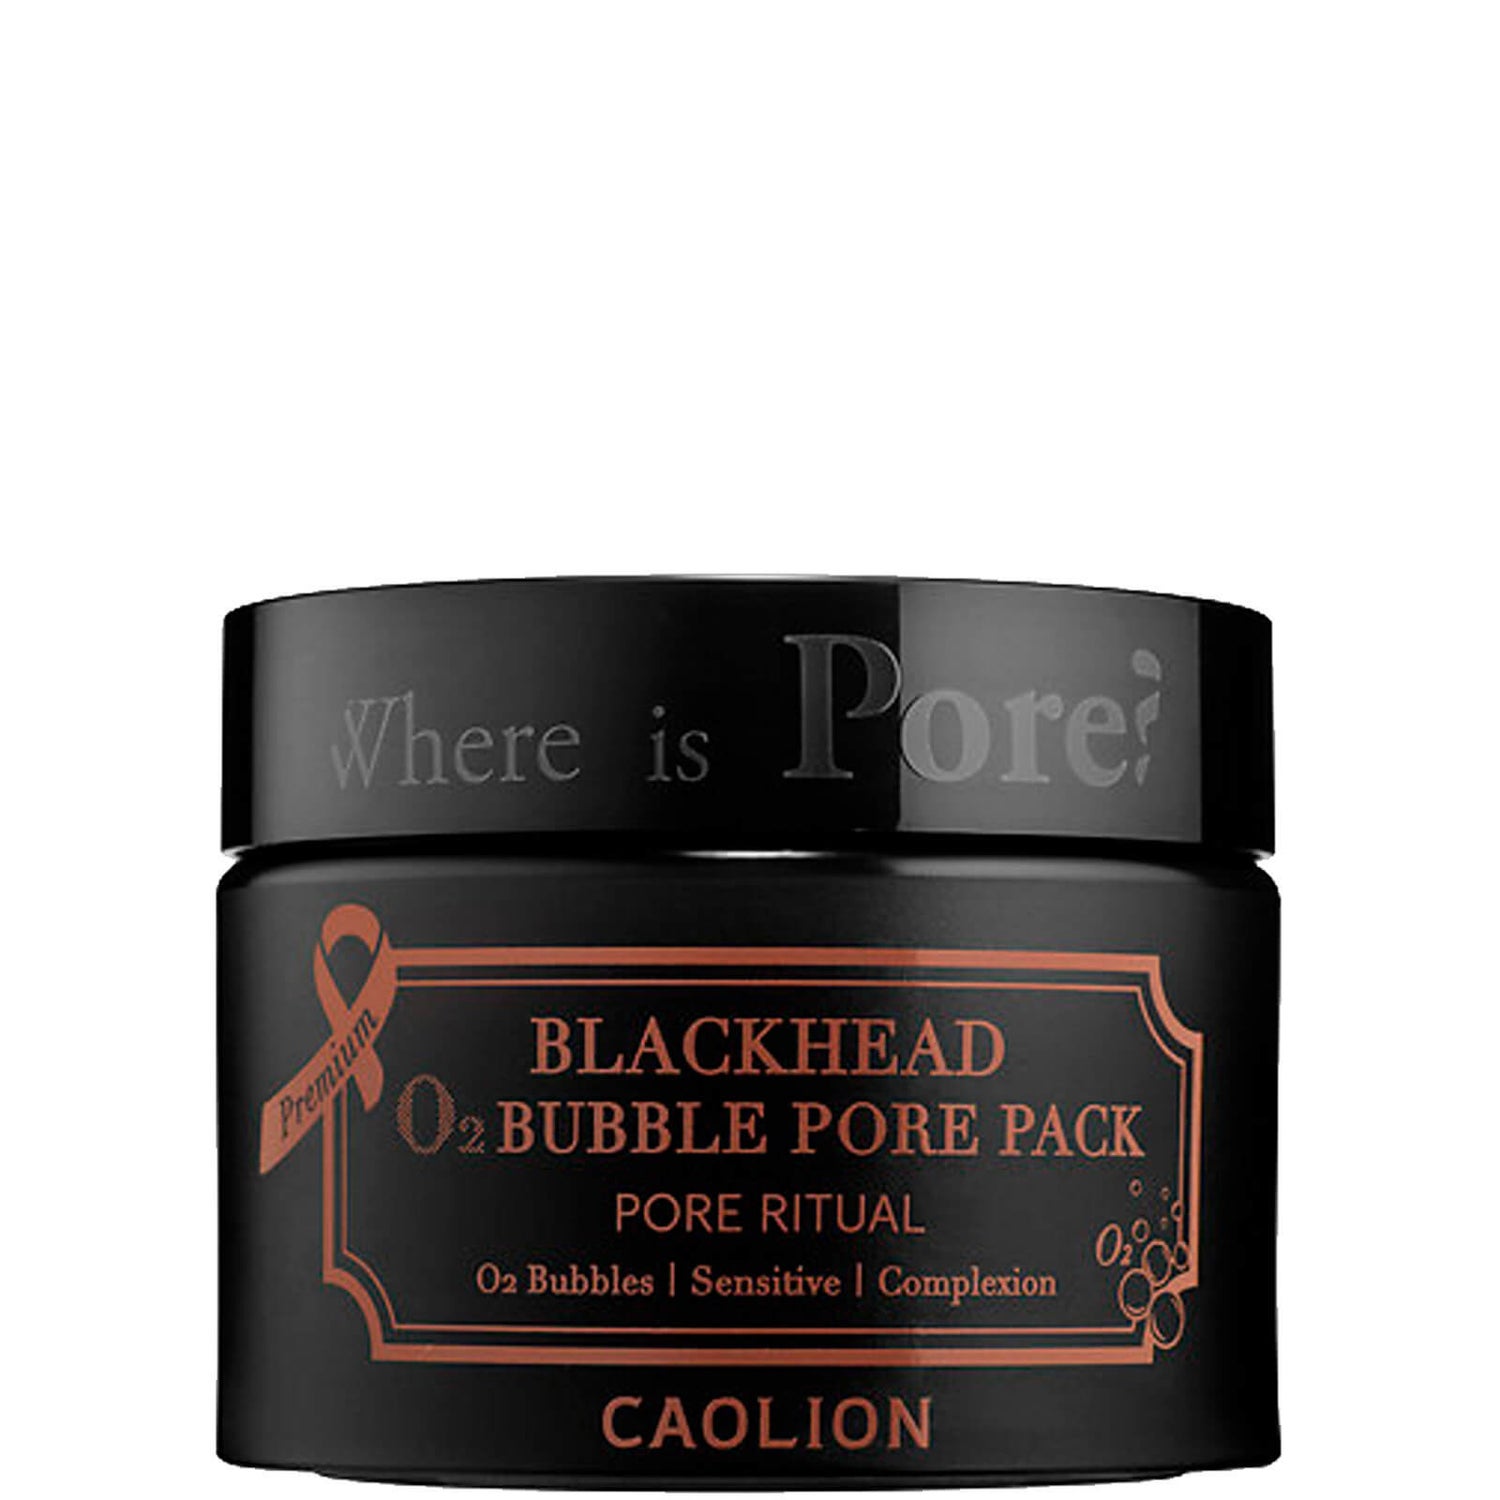 Caolion Blackhead O2 Bubble Pore Pack